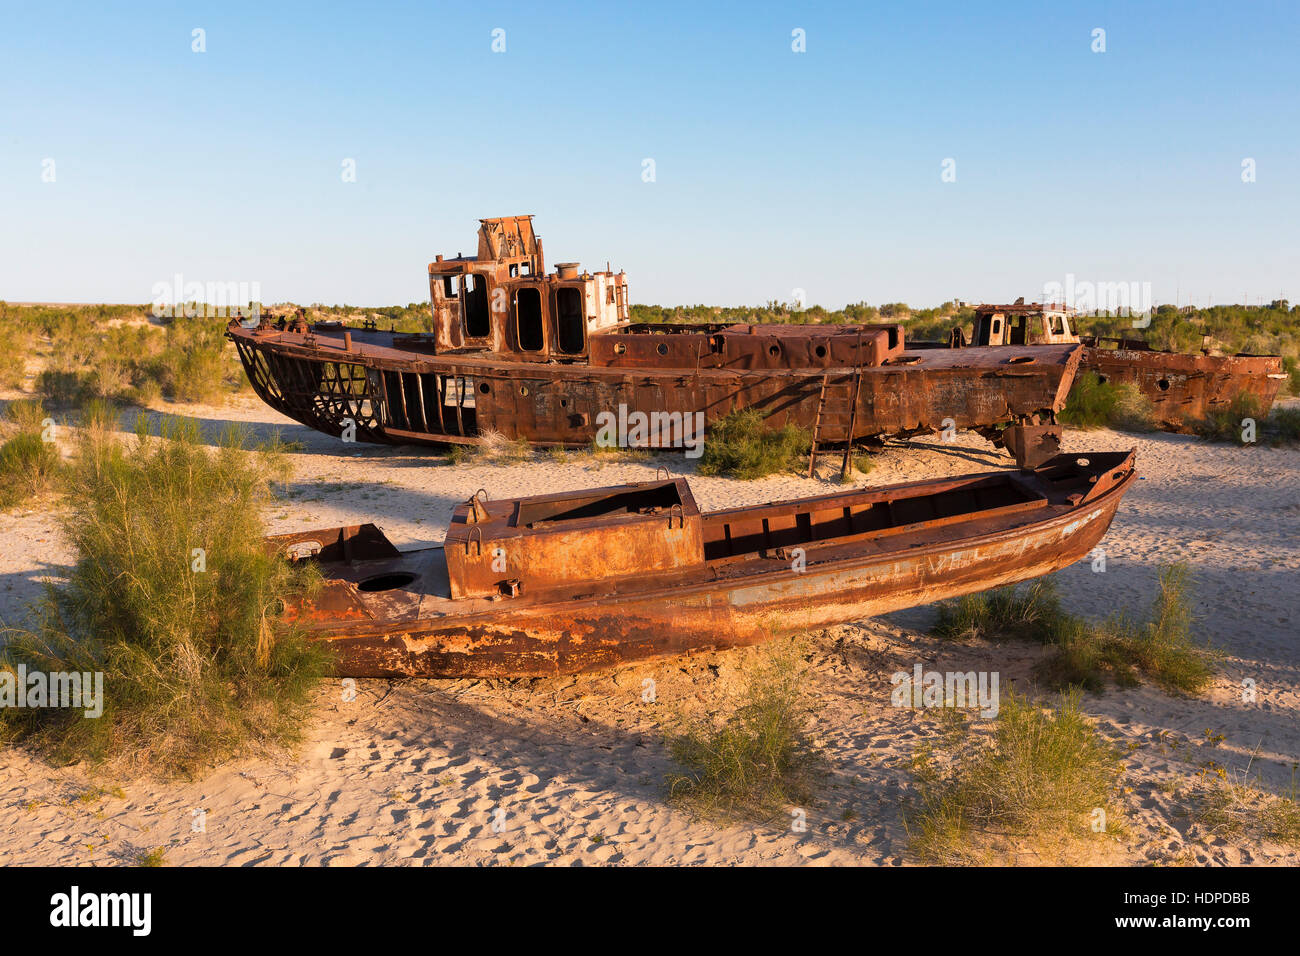 Los barcos oxidados que descansaba en el fondo del mar de Aral, después de que sus aguas se han secado. Foto de stock